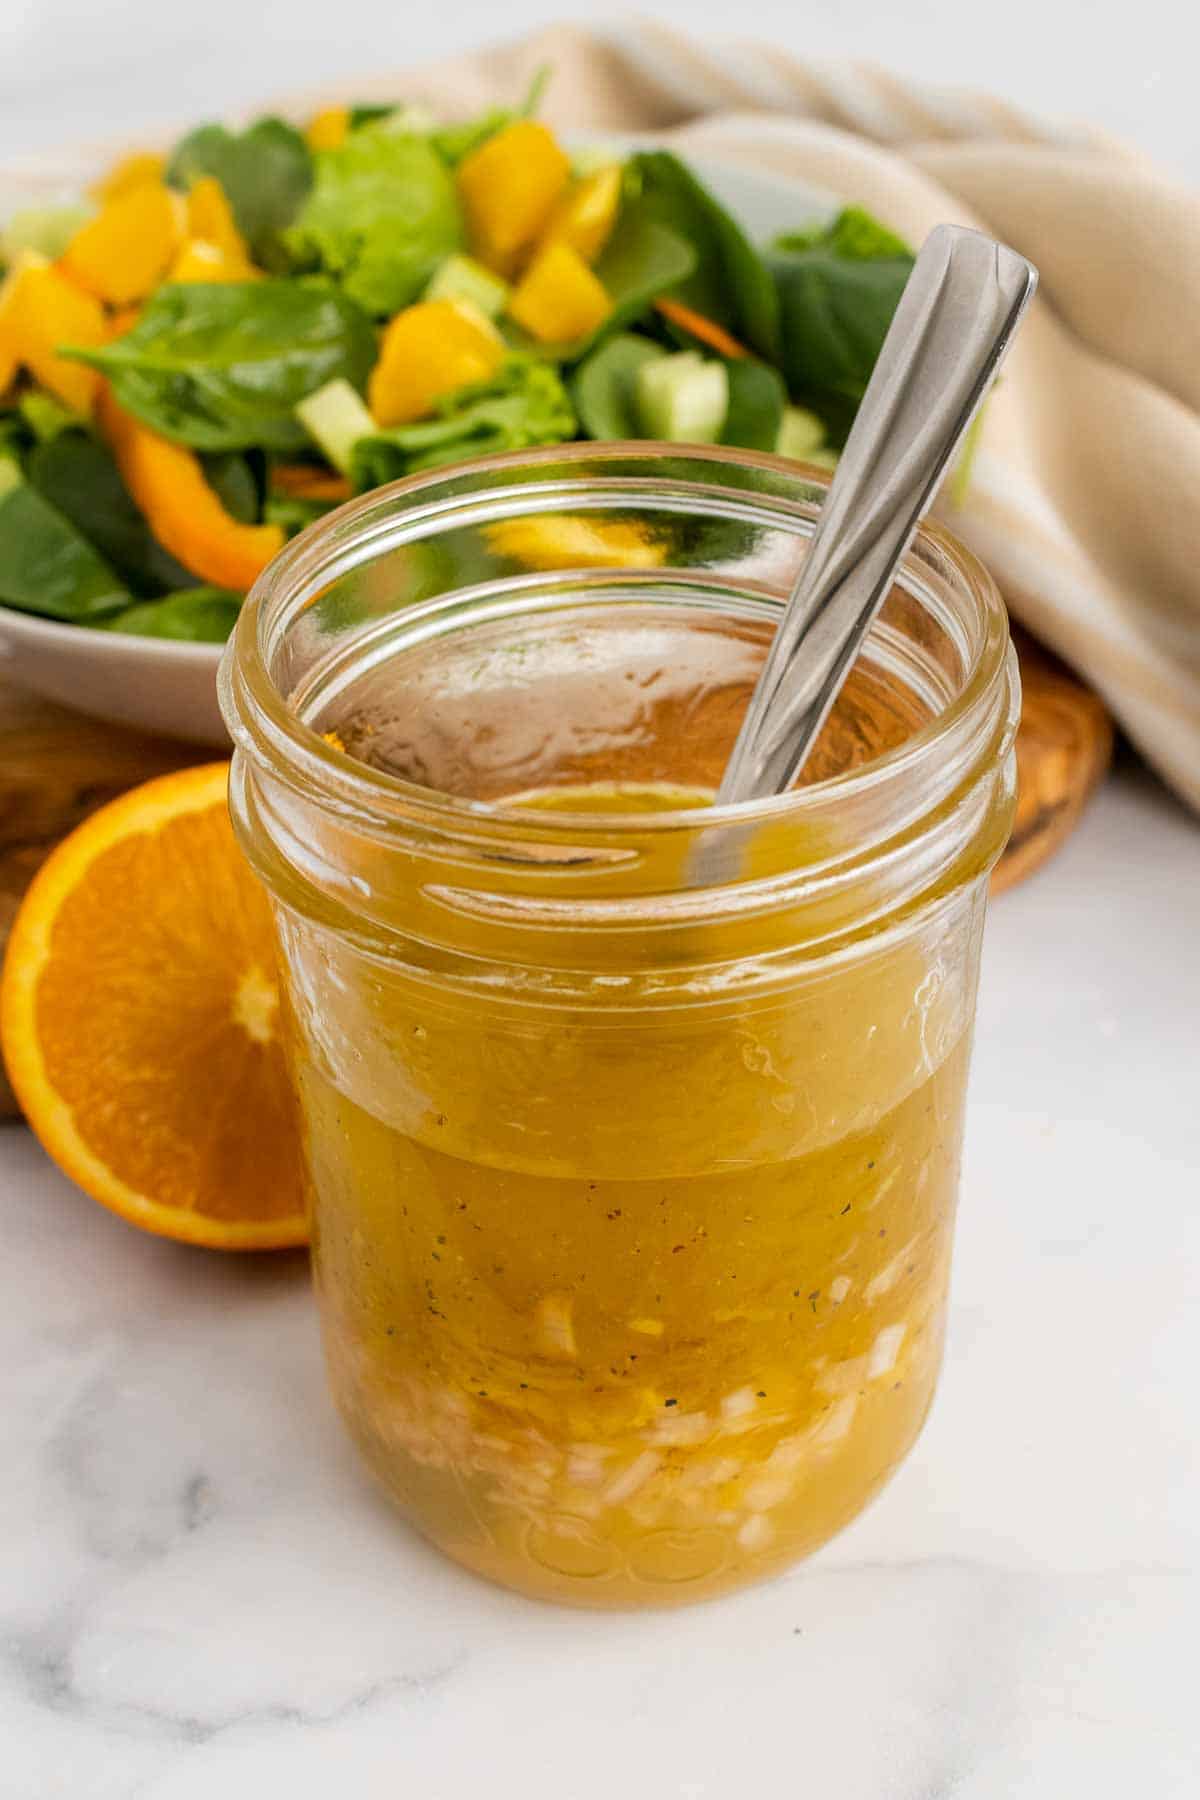 Glass jar with citrus vinaigrette